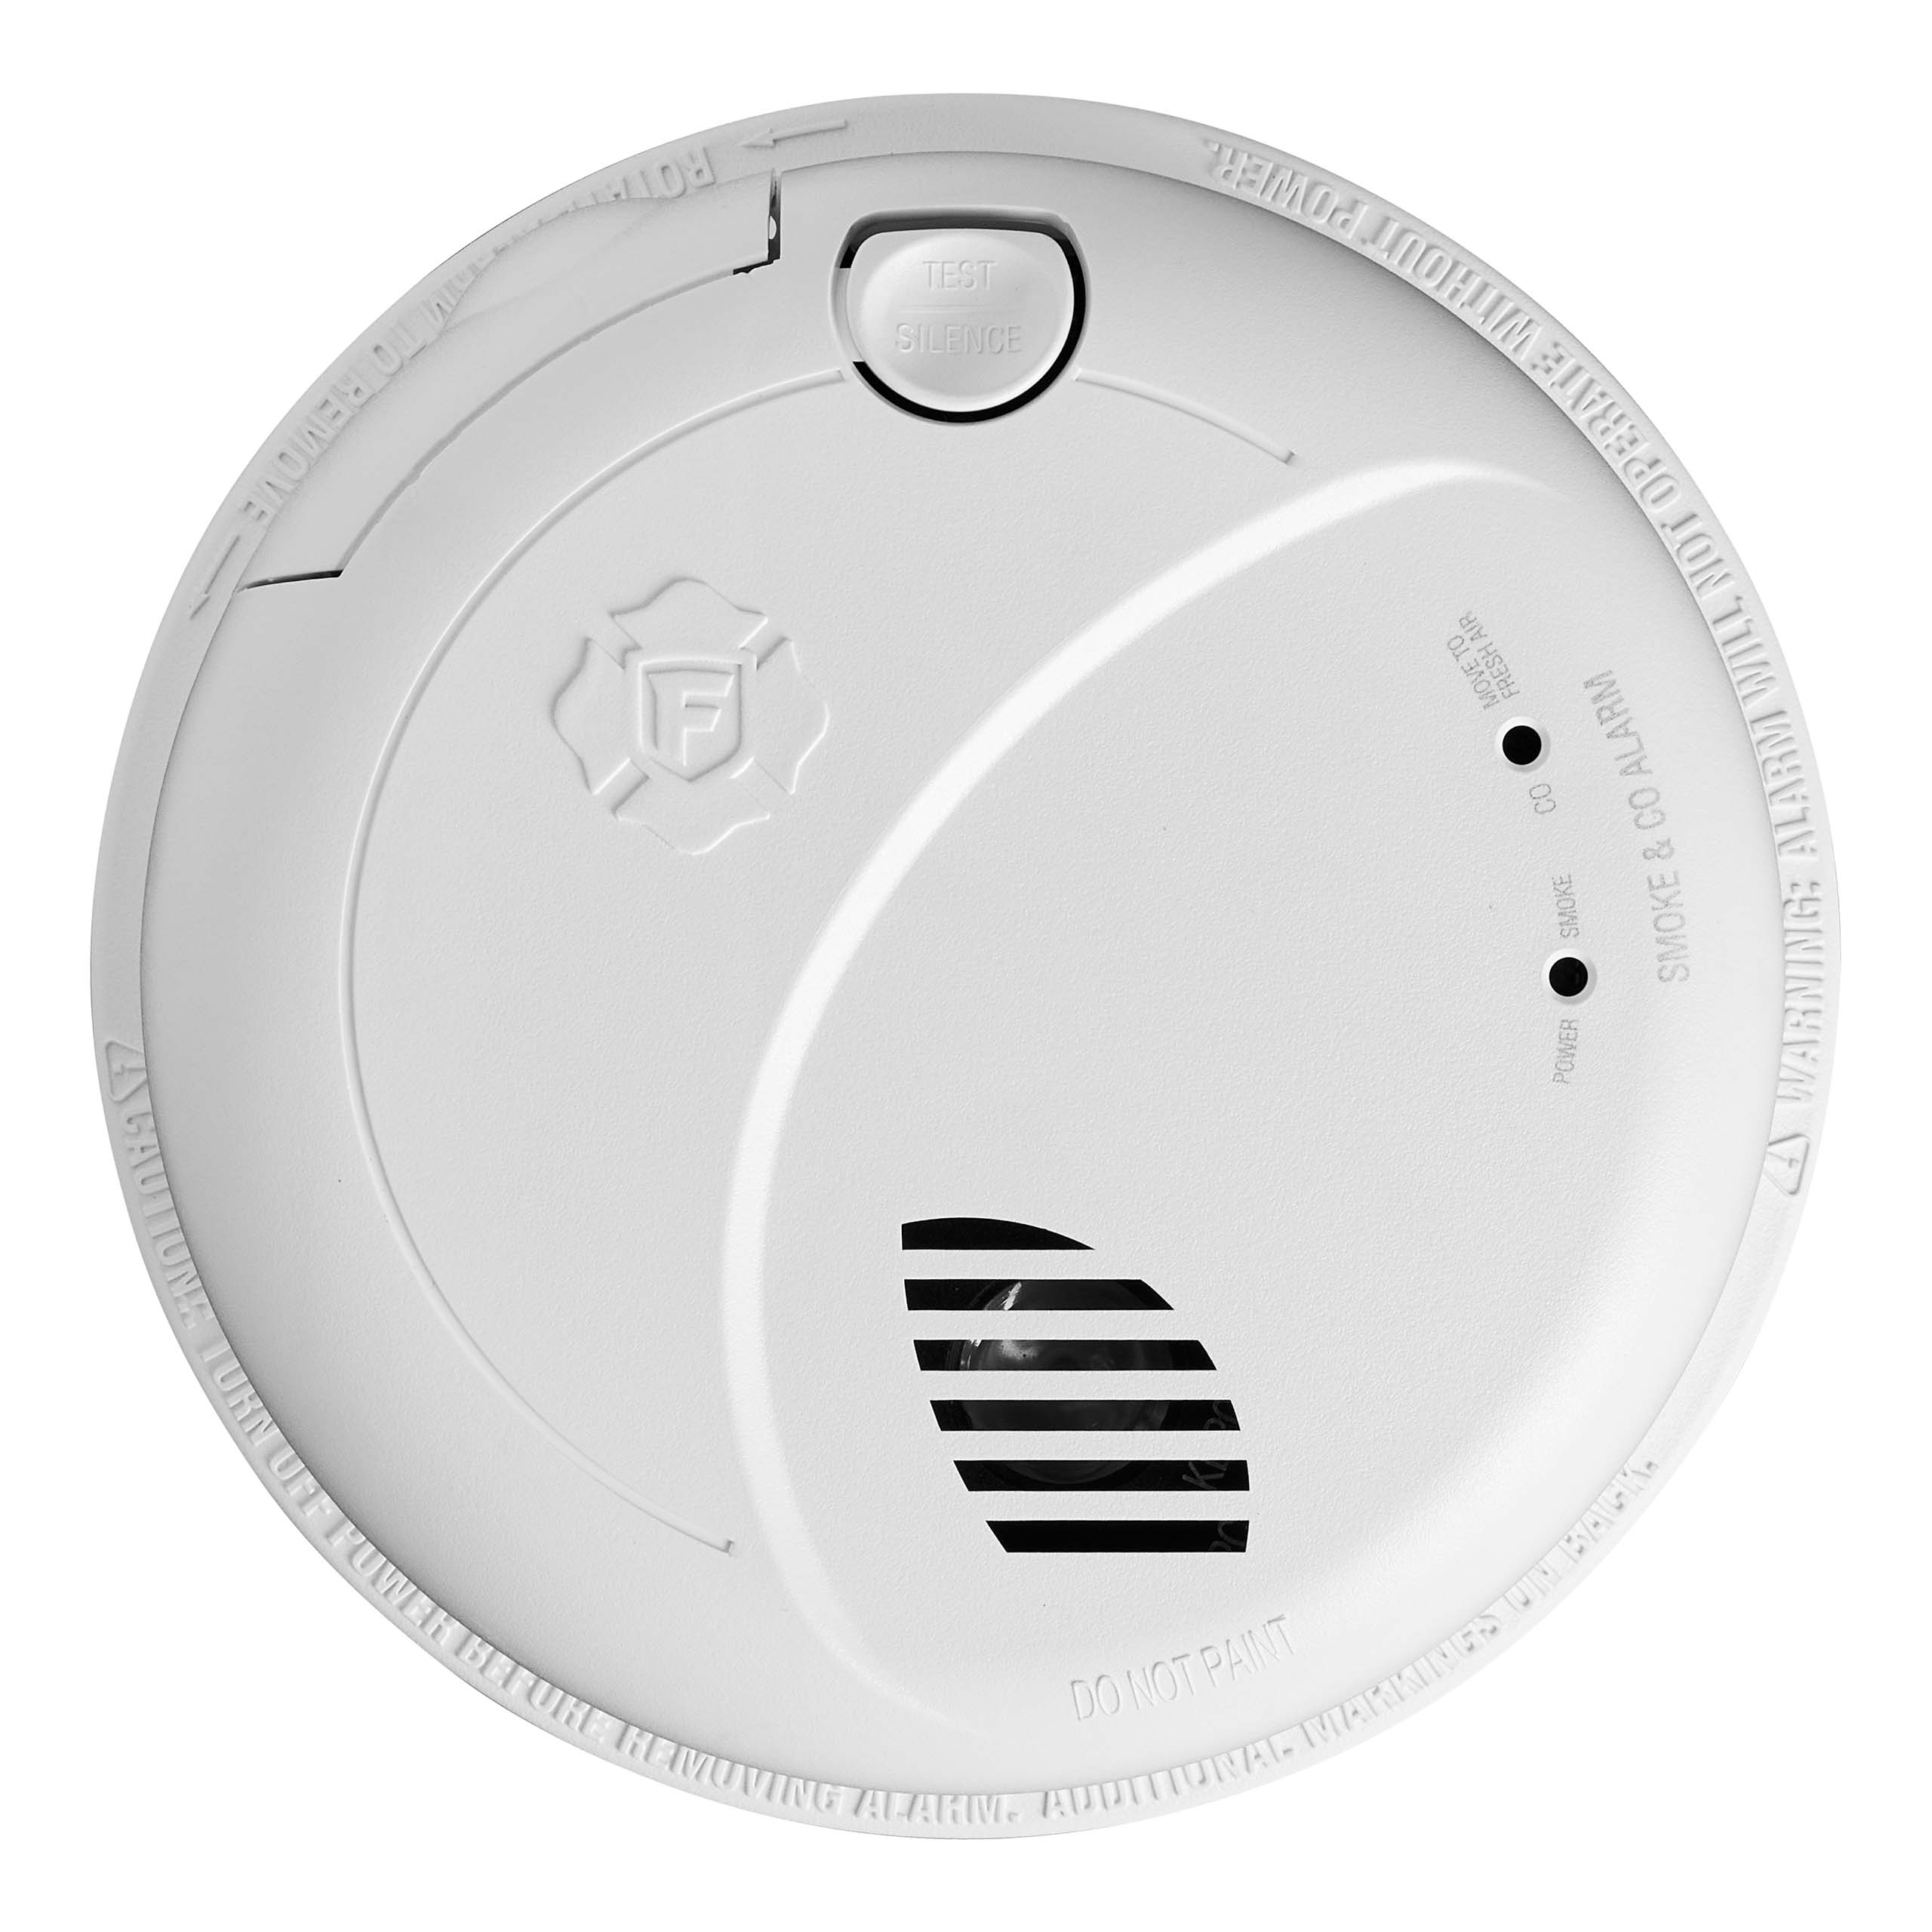 Combination Smoke & Carbon Monoxide Detector